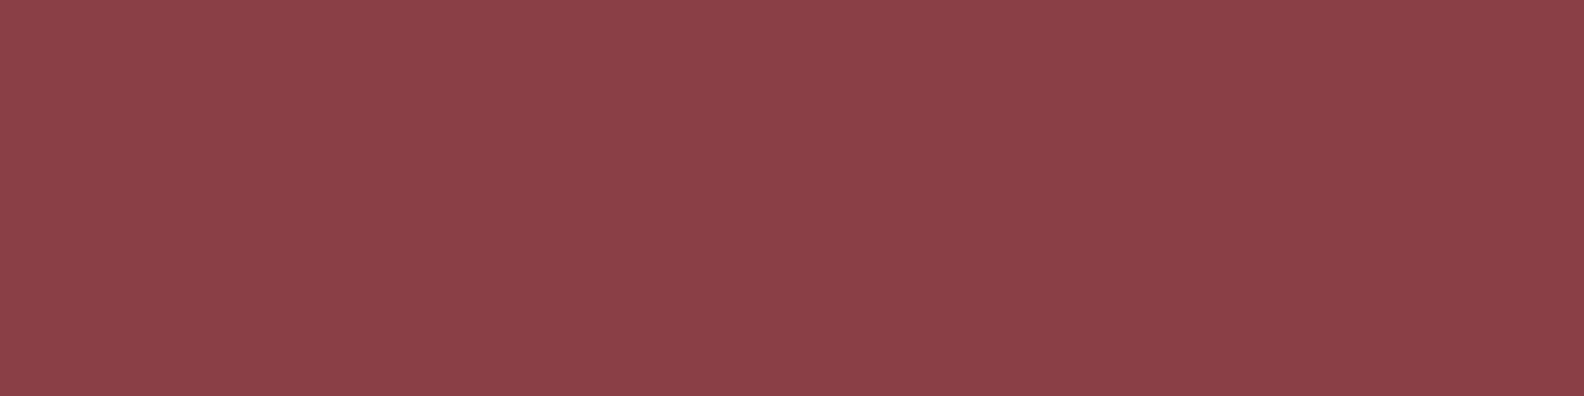 1584x396 Cordovan Solid Color Background